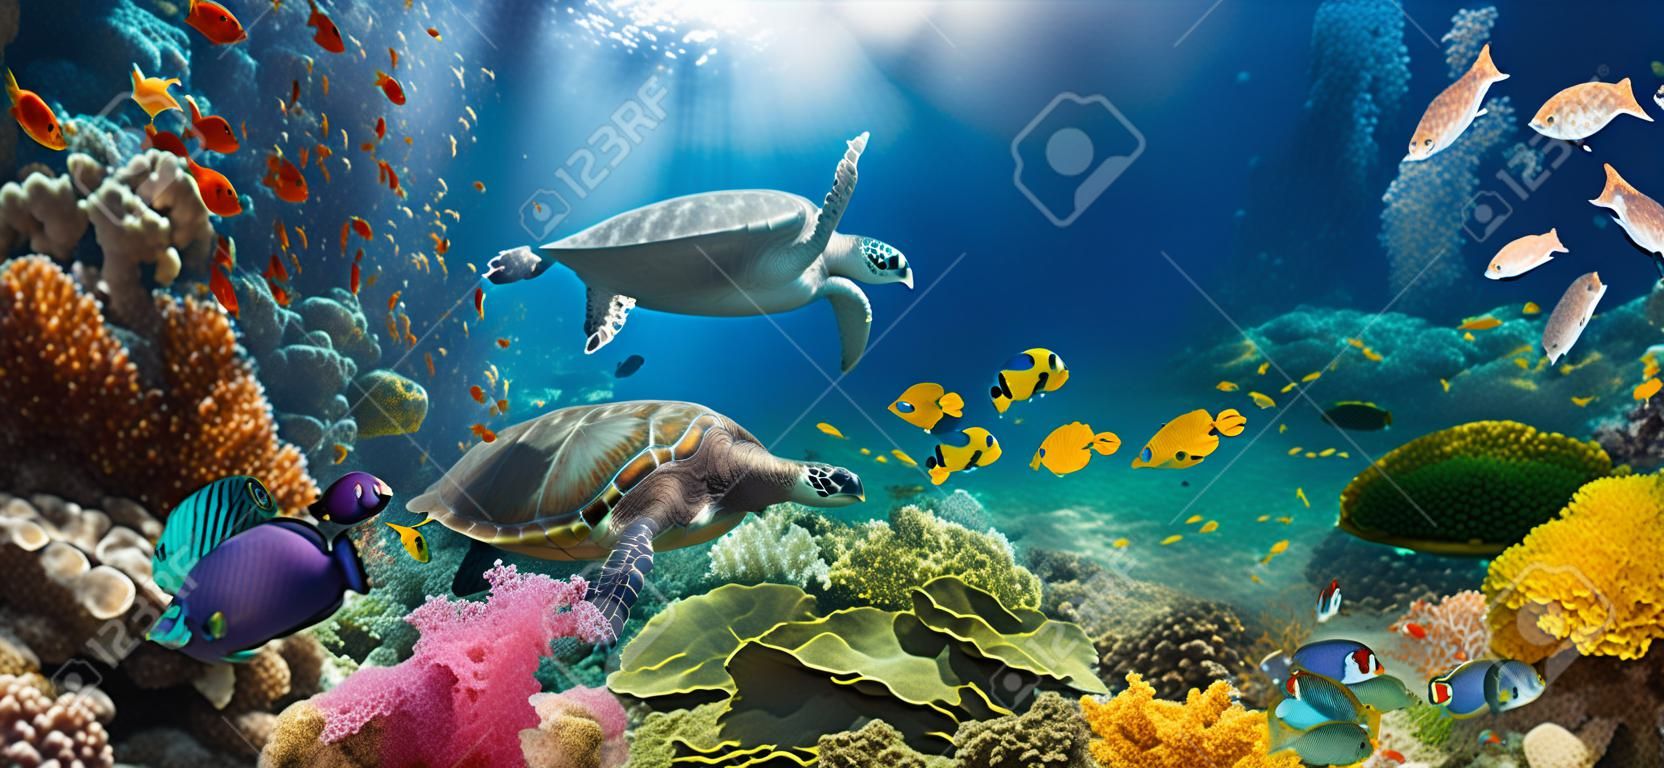 Unterwasserparadies-Hintergrund - Korallenriff-Tierwelt-Naturcollage mit Meeresschildkröte und buntem Fischhintergrund